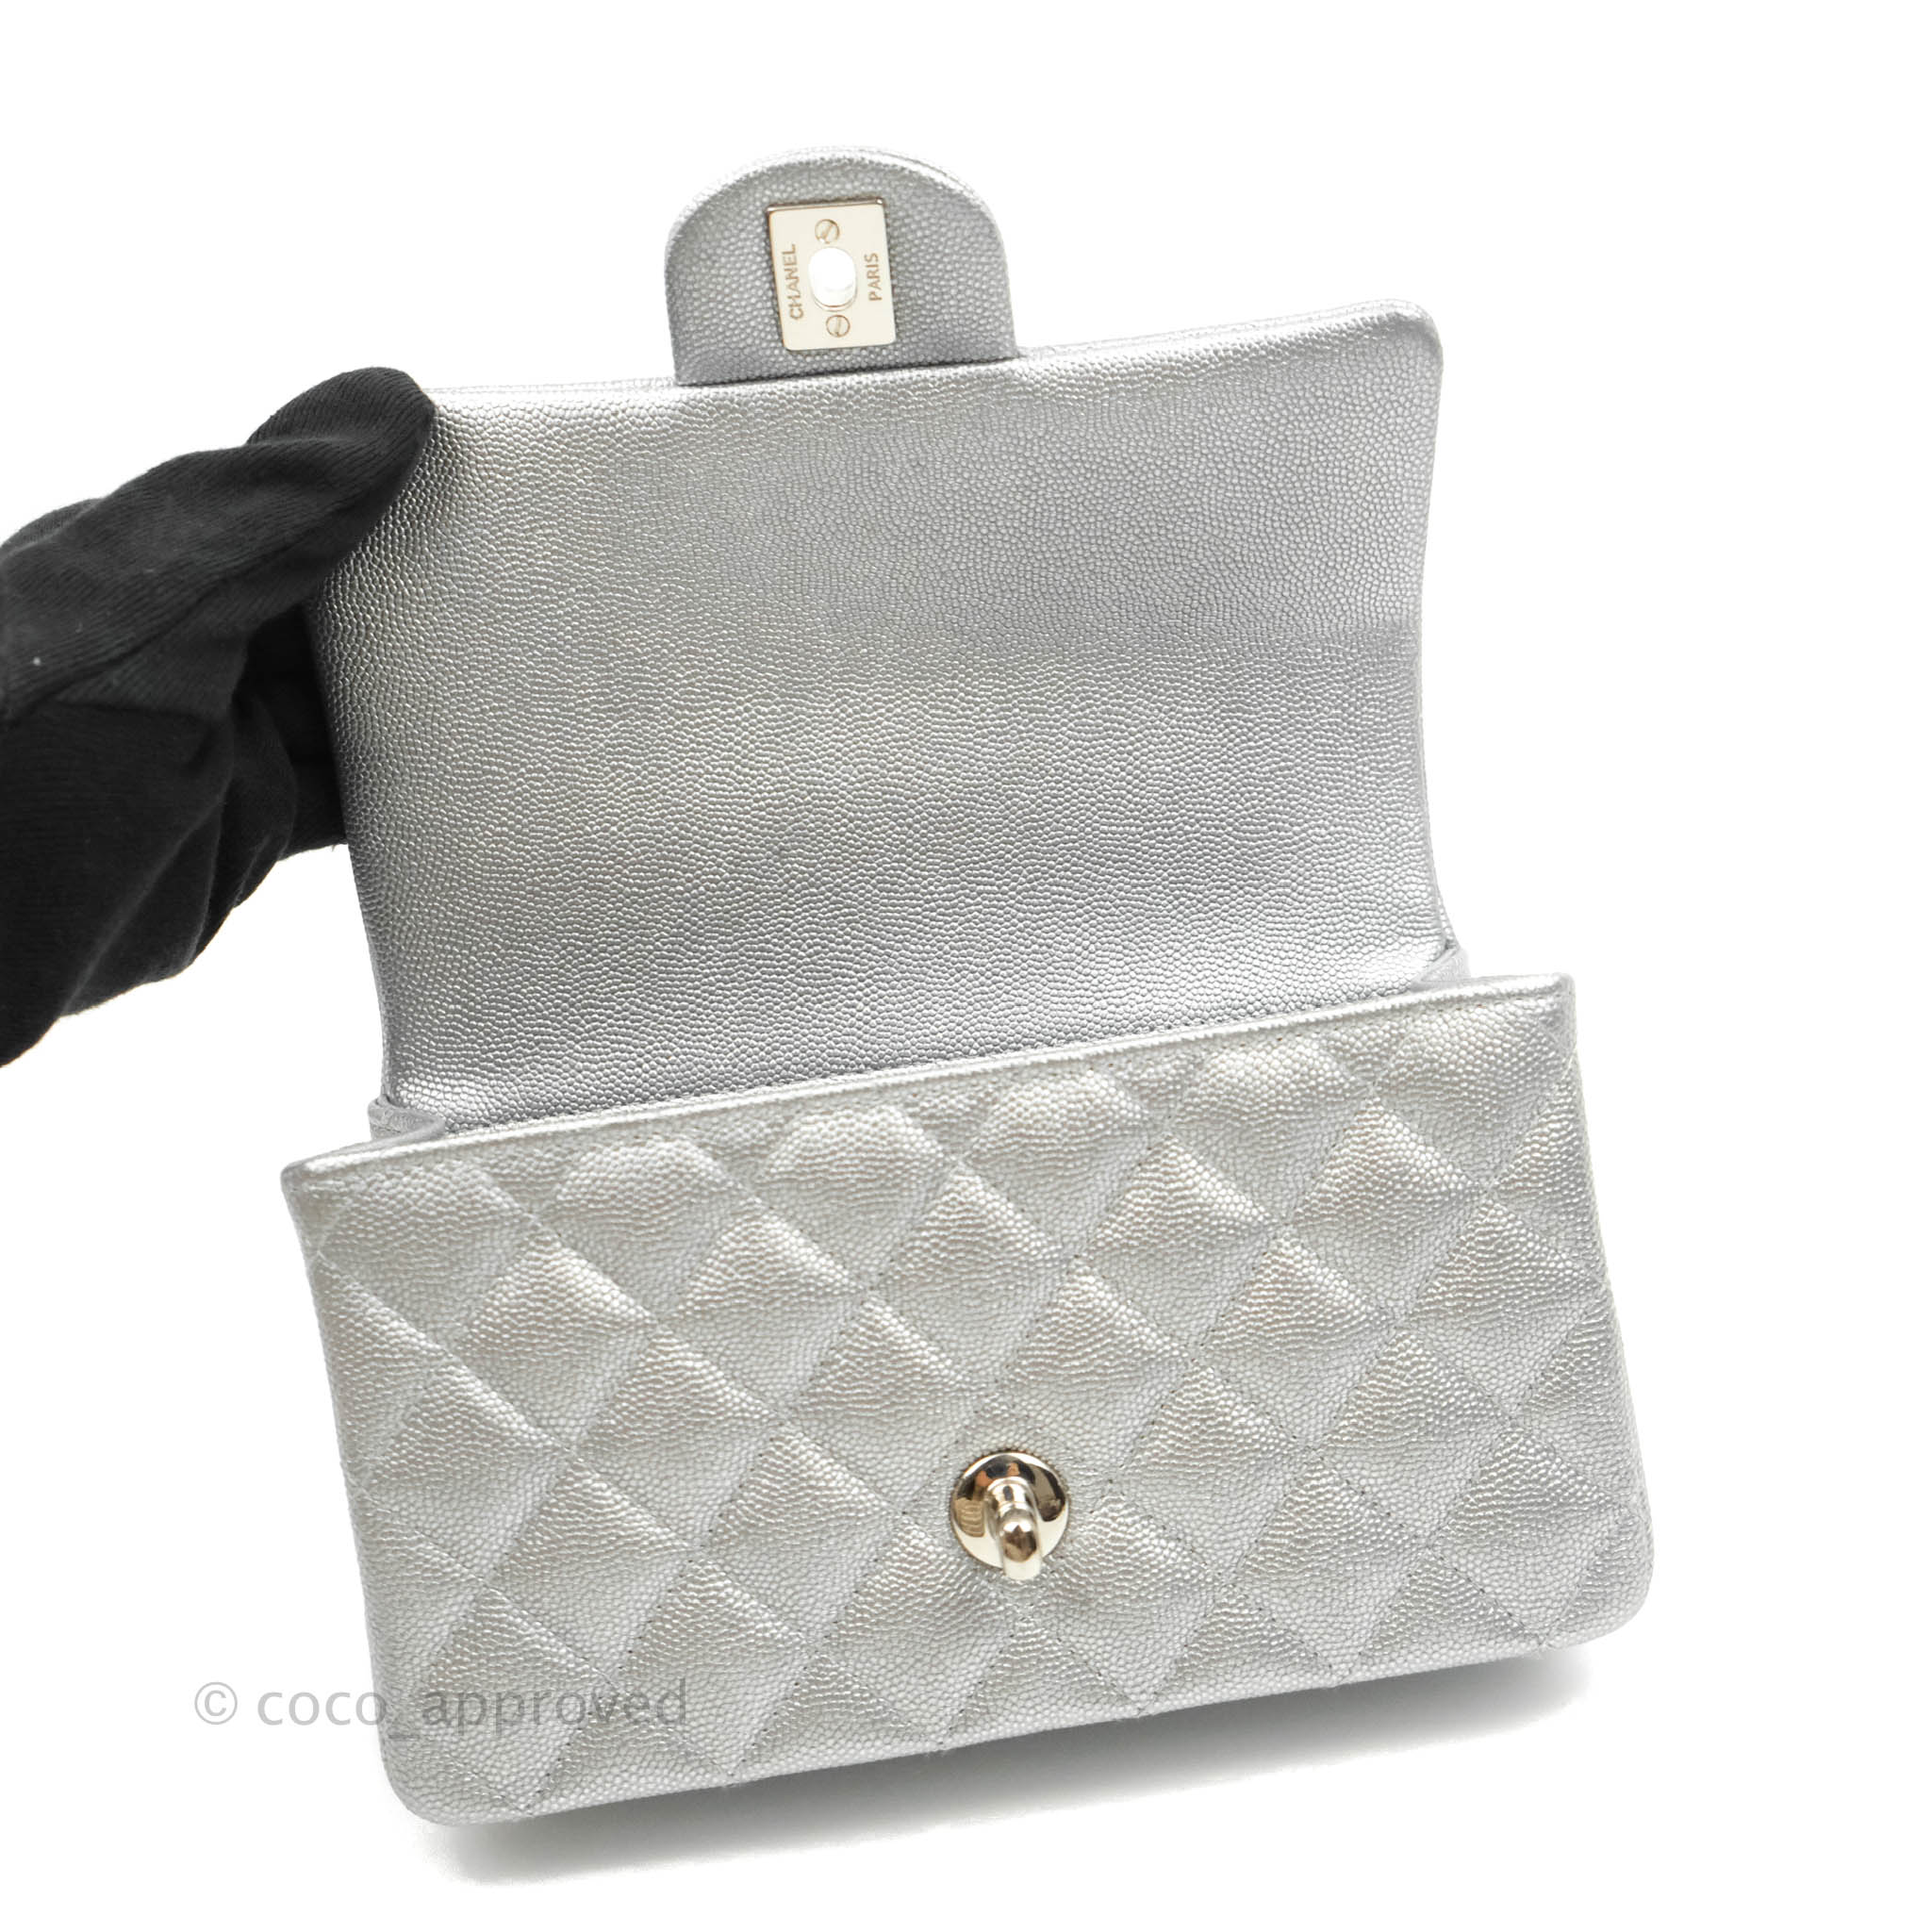 FWRD Renew Chanel V Stitch Chain Shoulder Bag in Silver  FWRD